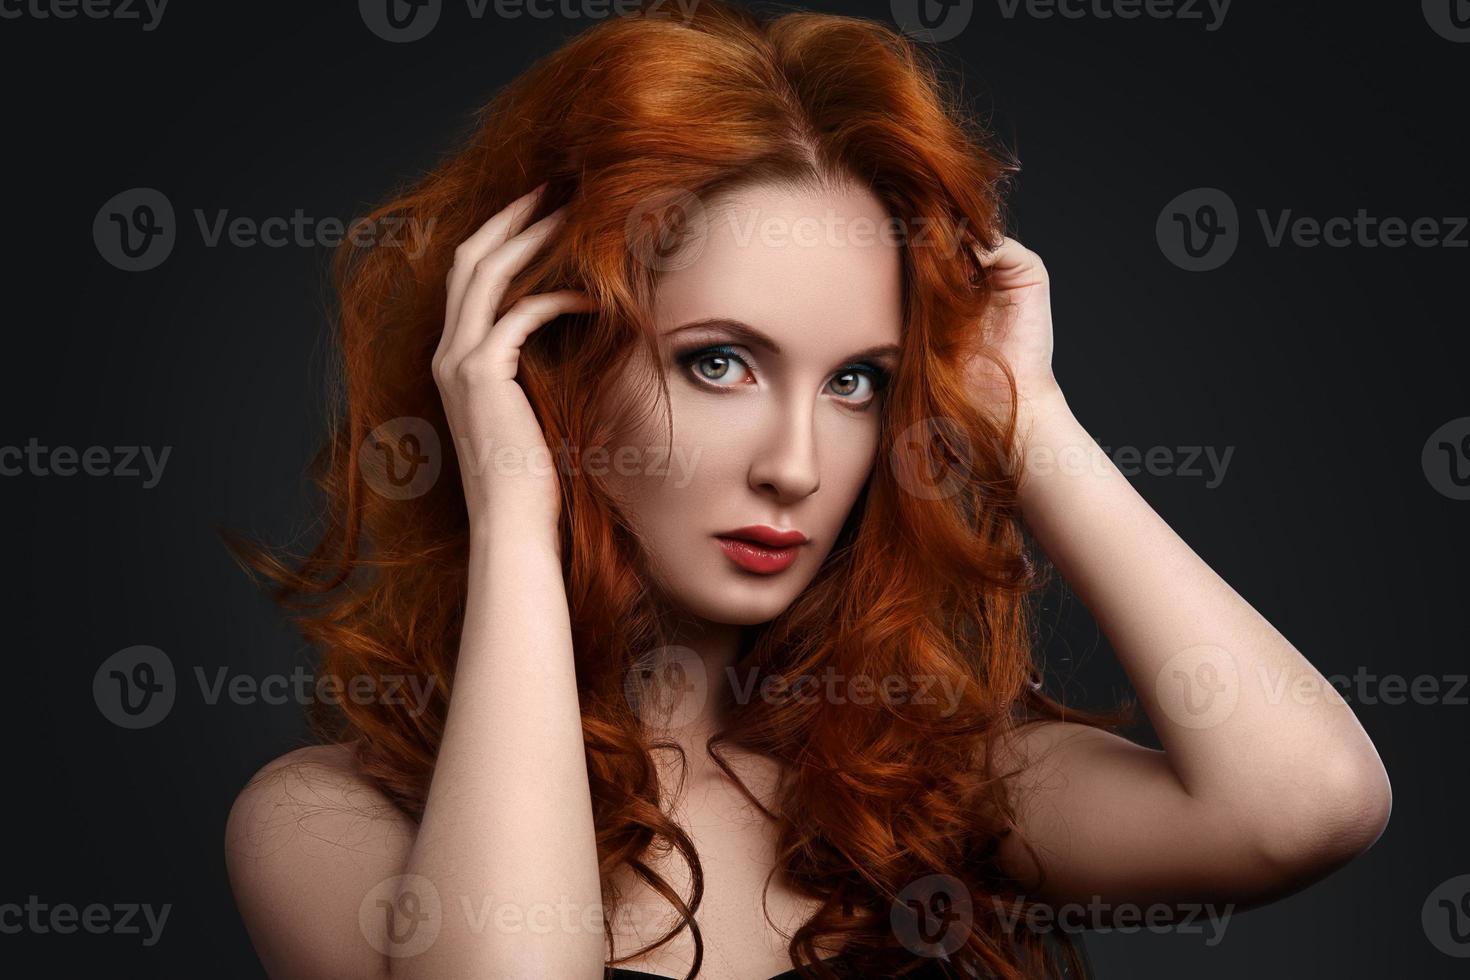 retrato de mulher com lindo cabelo ruivo foto